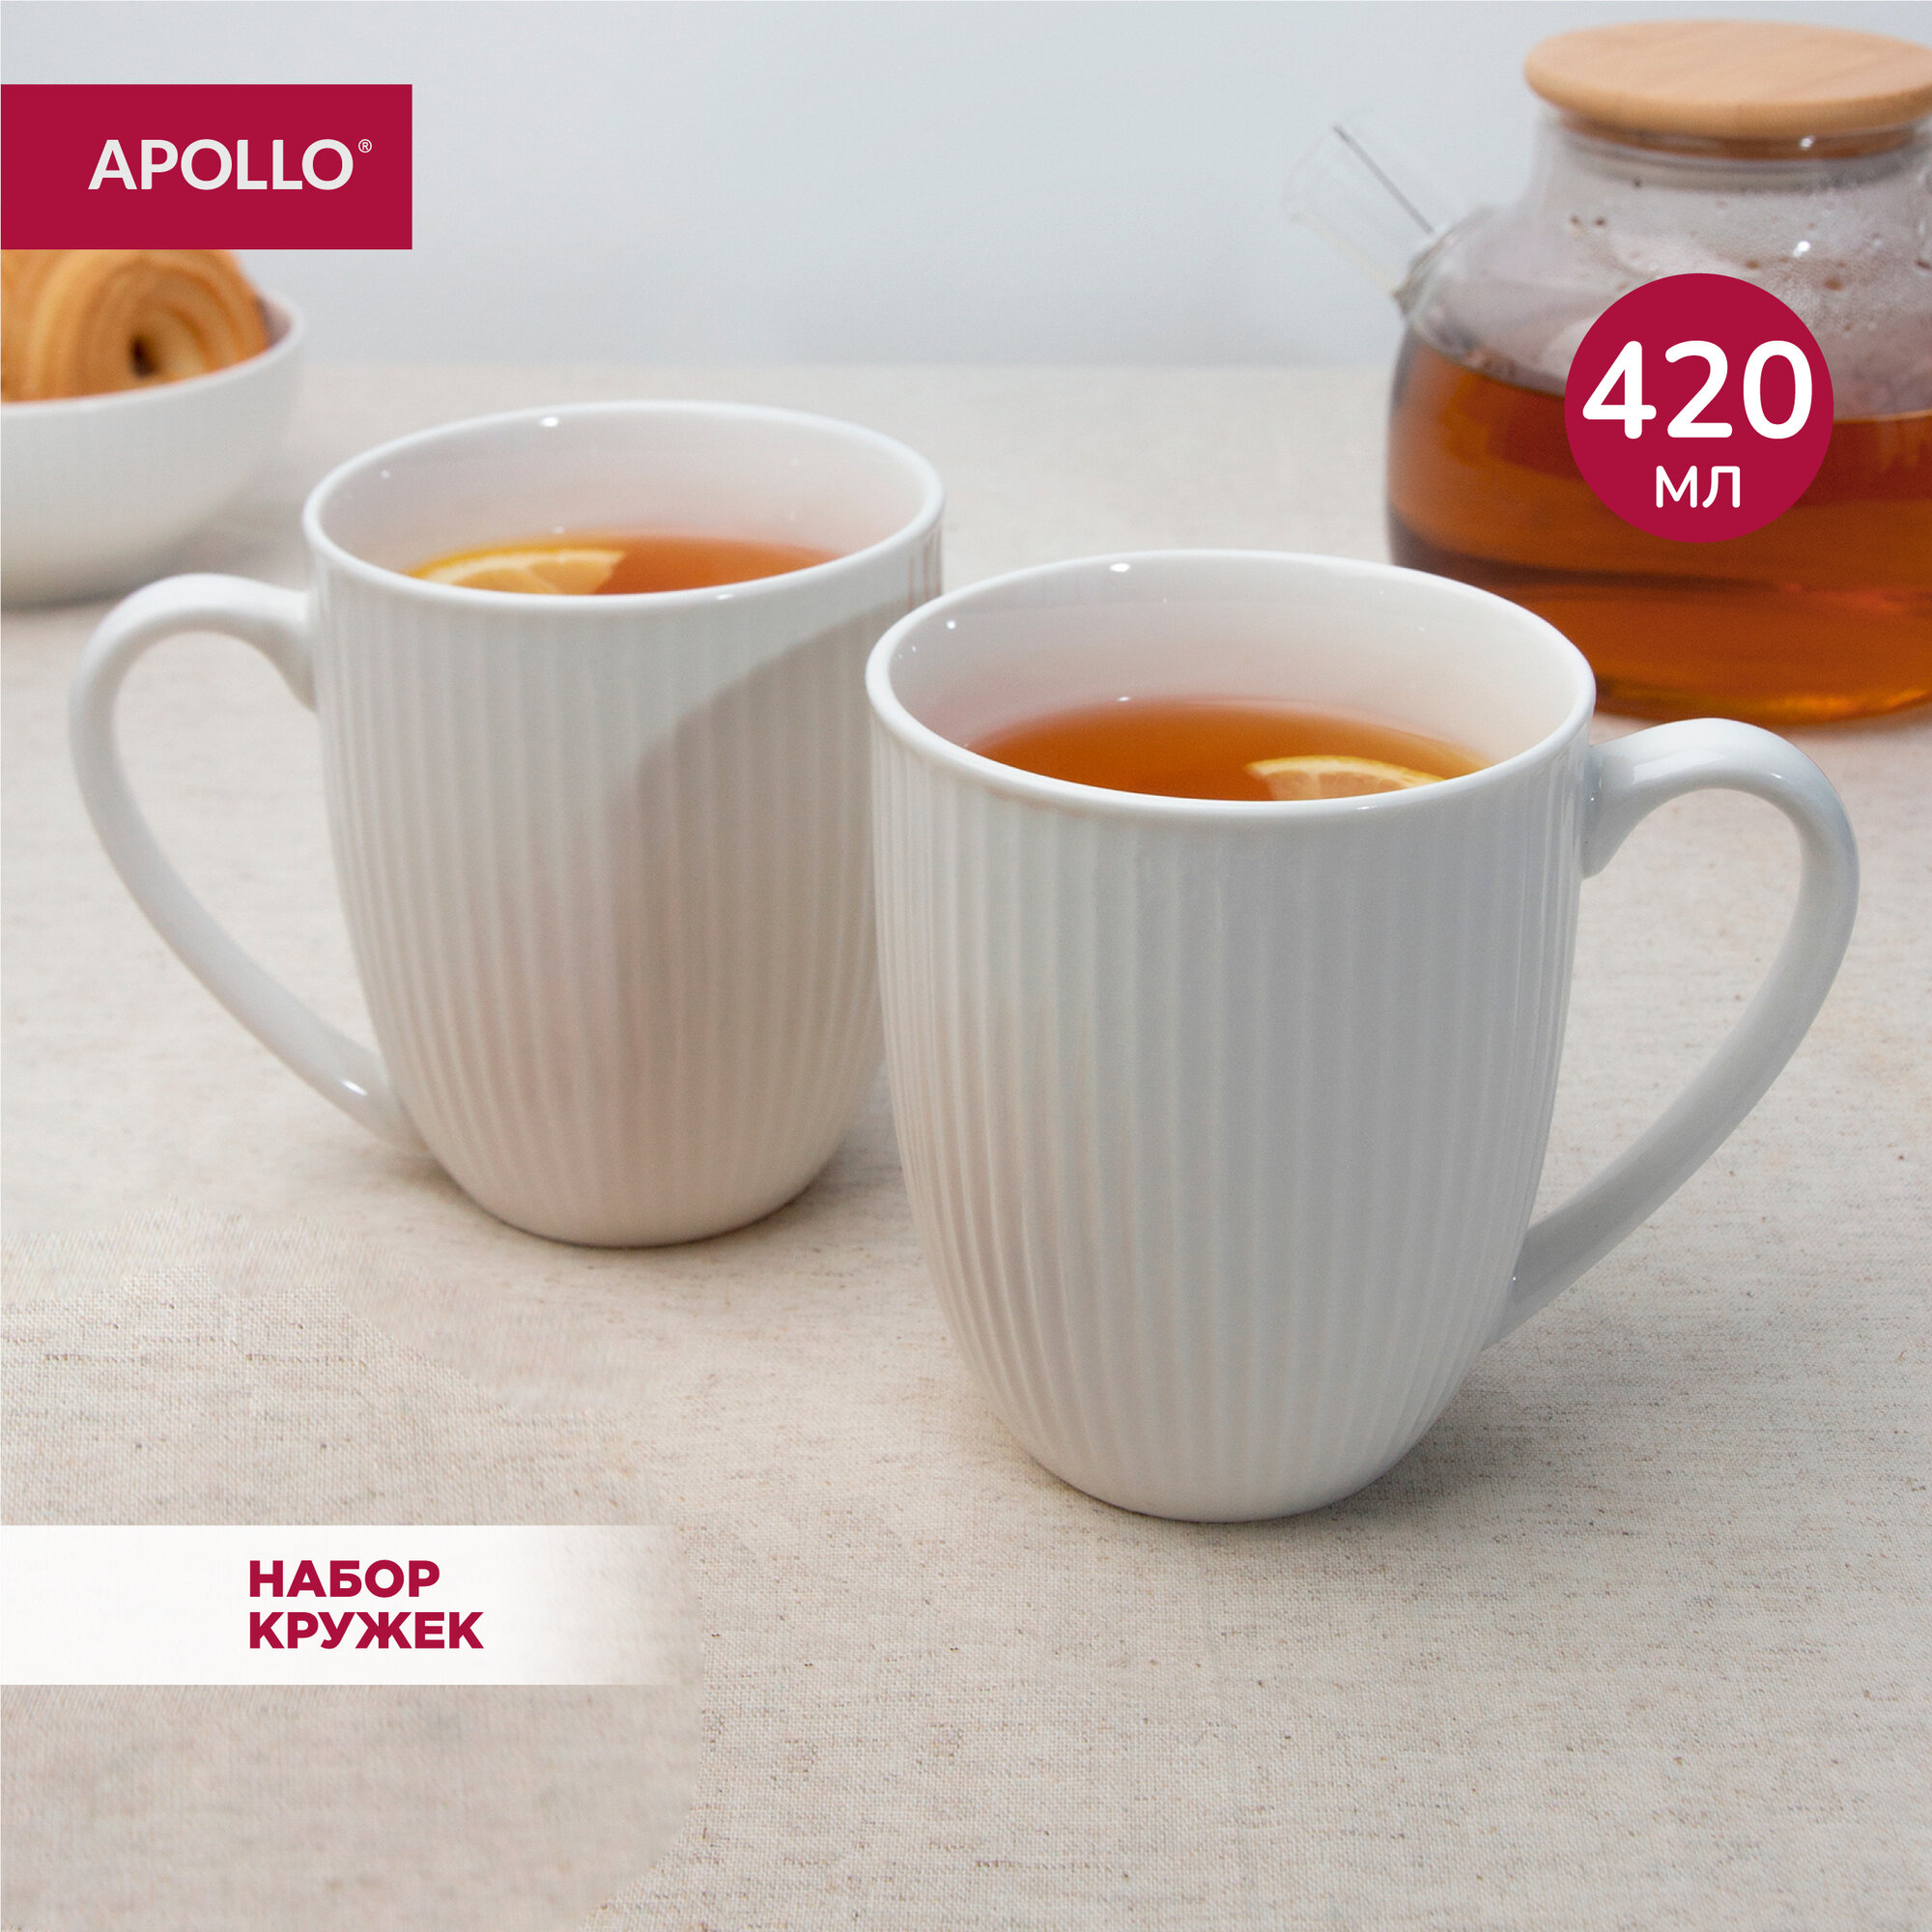 Кружка фарфоровая набор чашек для чая и кофе Apollo 